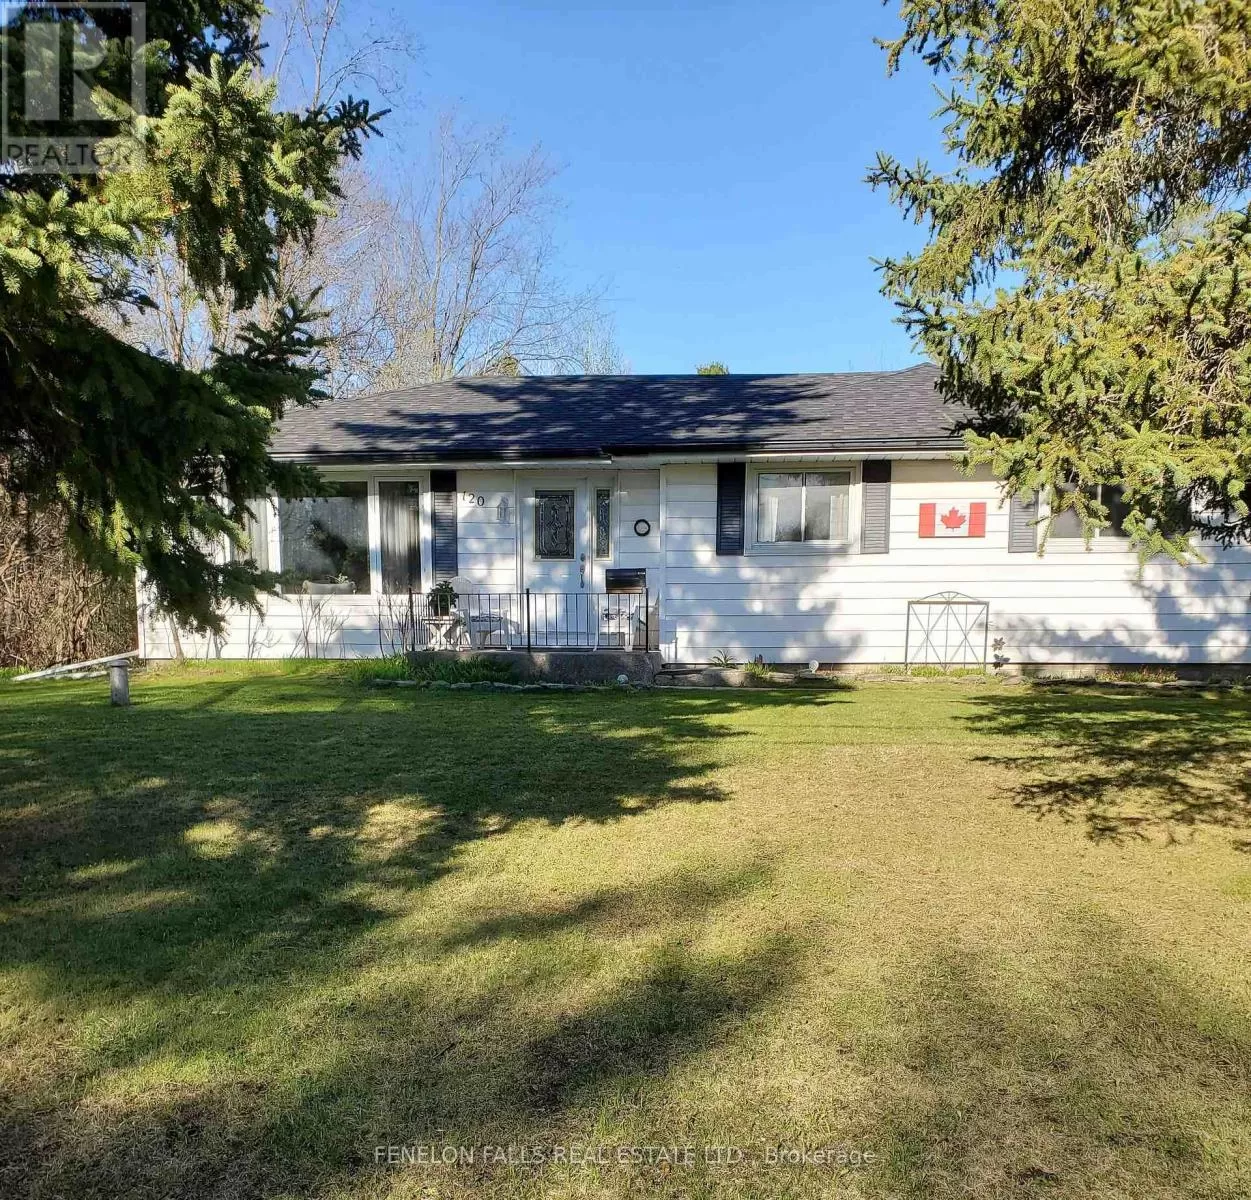 House for rent: 120 Clifton Street, Kawartha Lakes, Ontario K0M 1N0